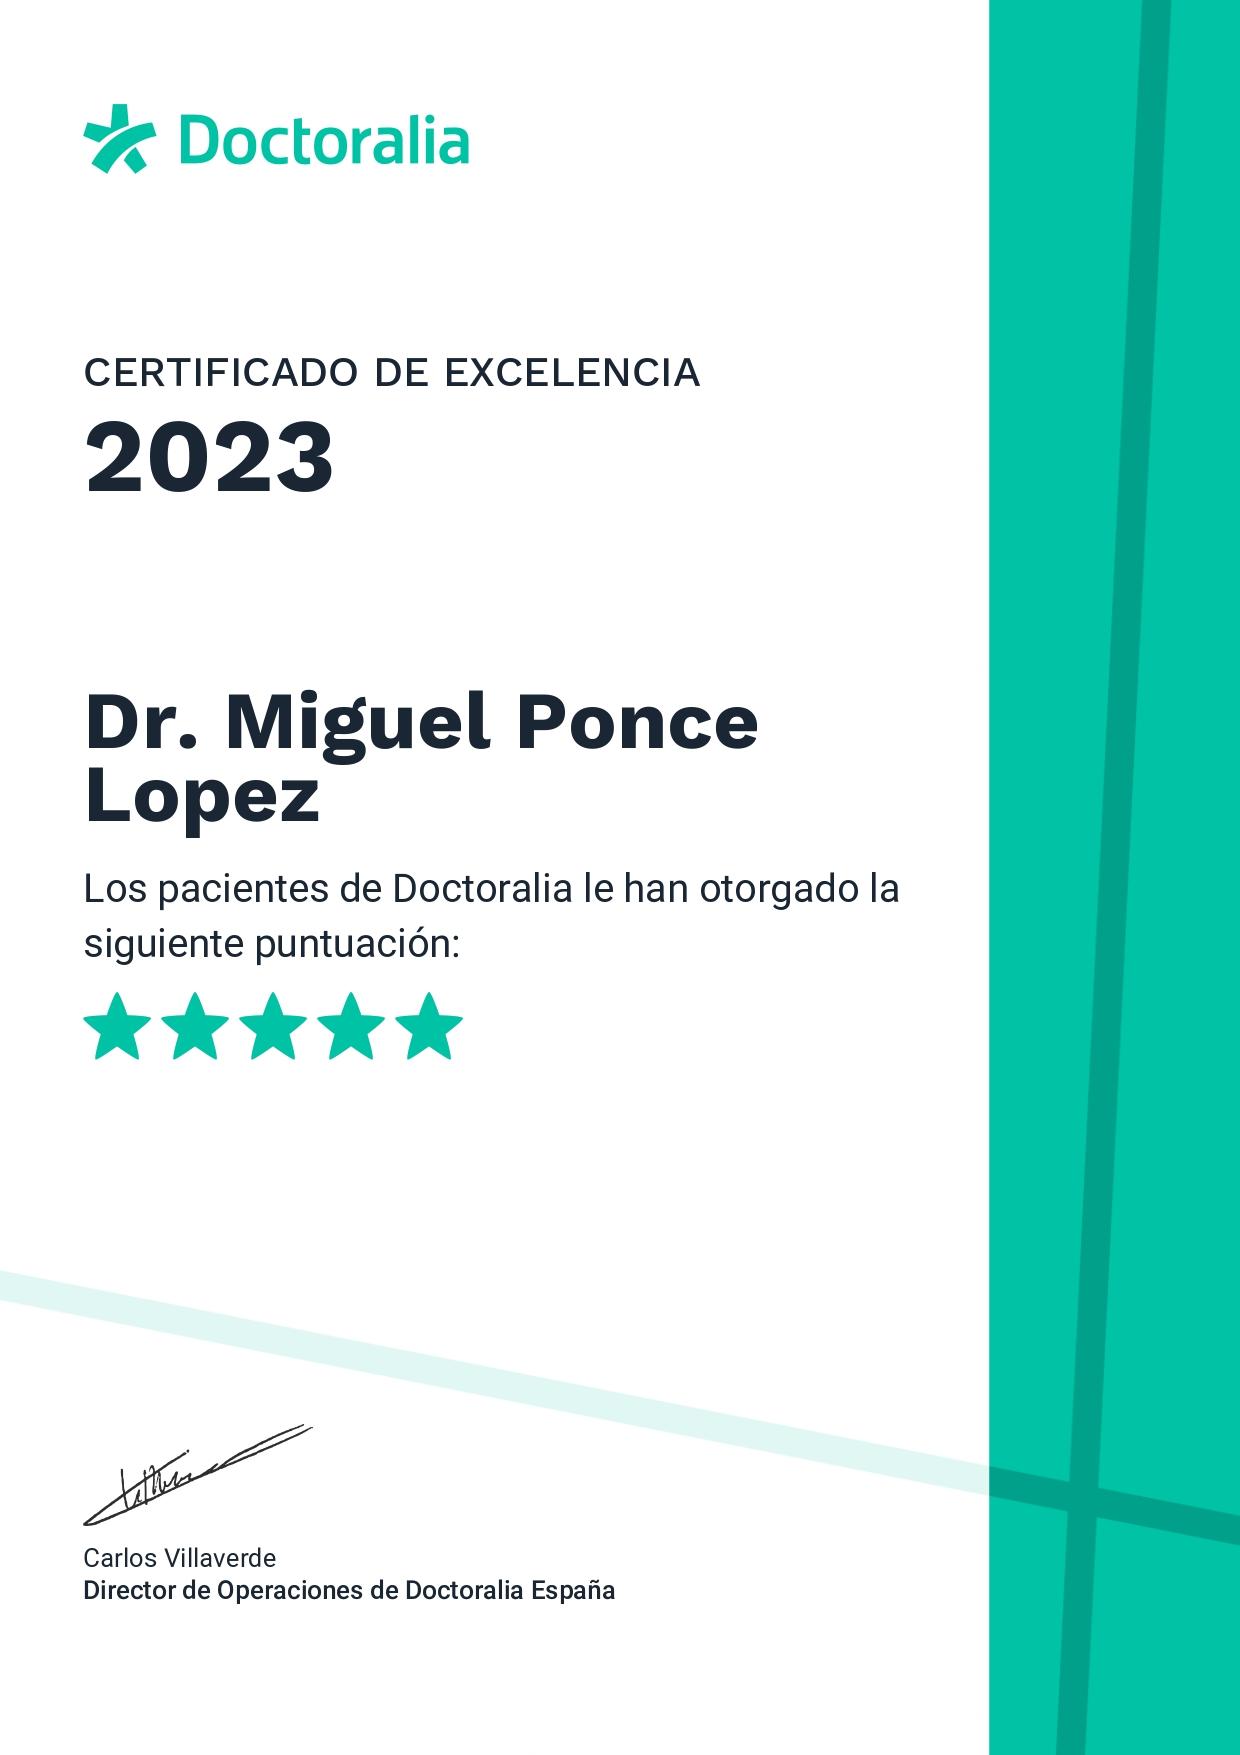 CERTIFICADO DE EXCELENCIA DE DOCTORALIA EN EL 2023